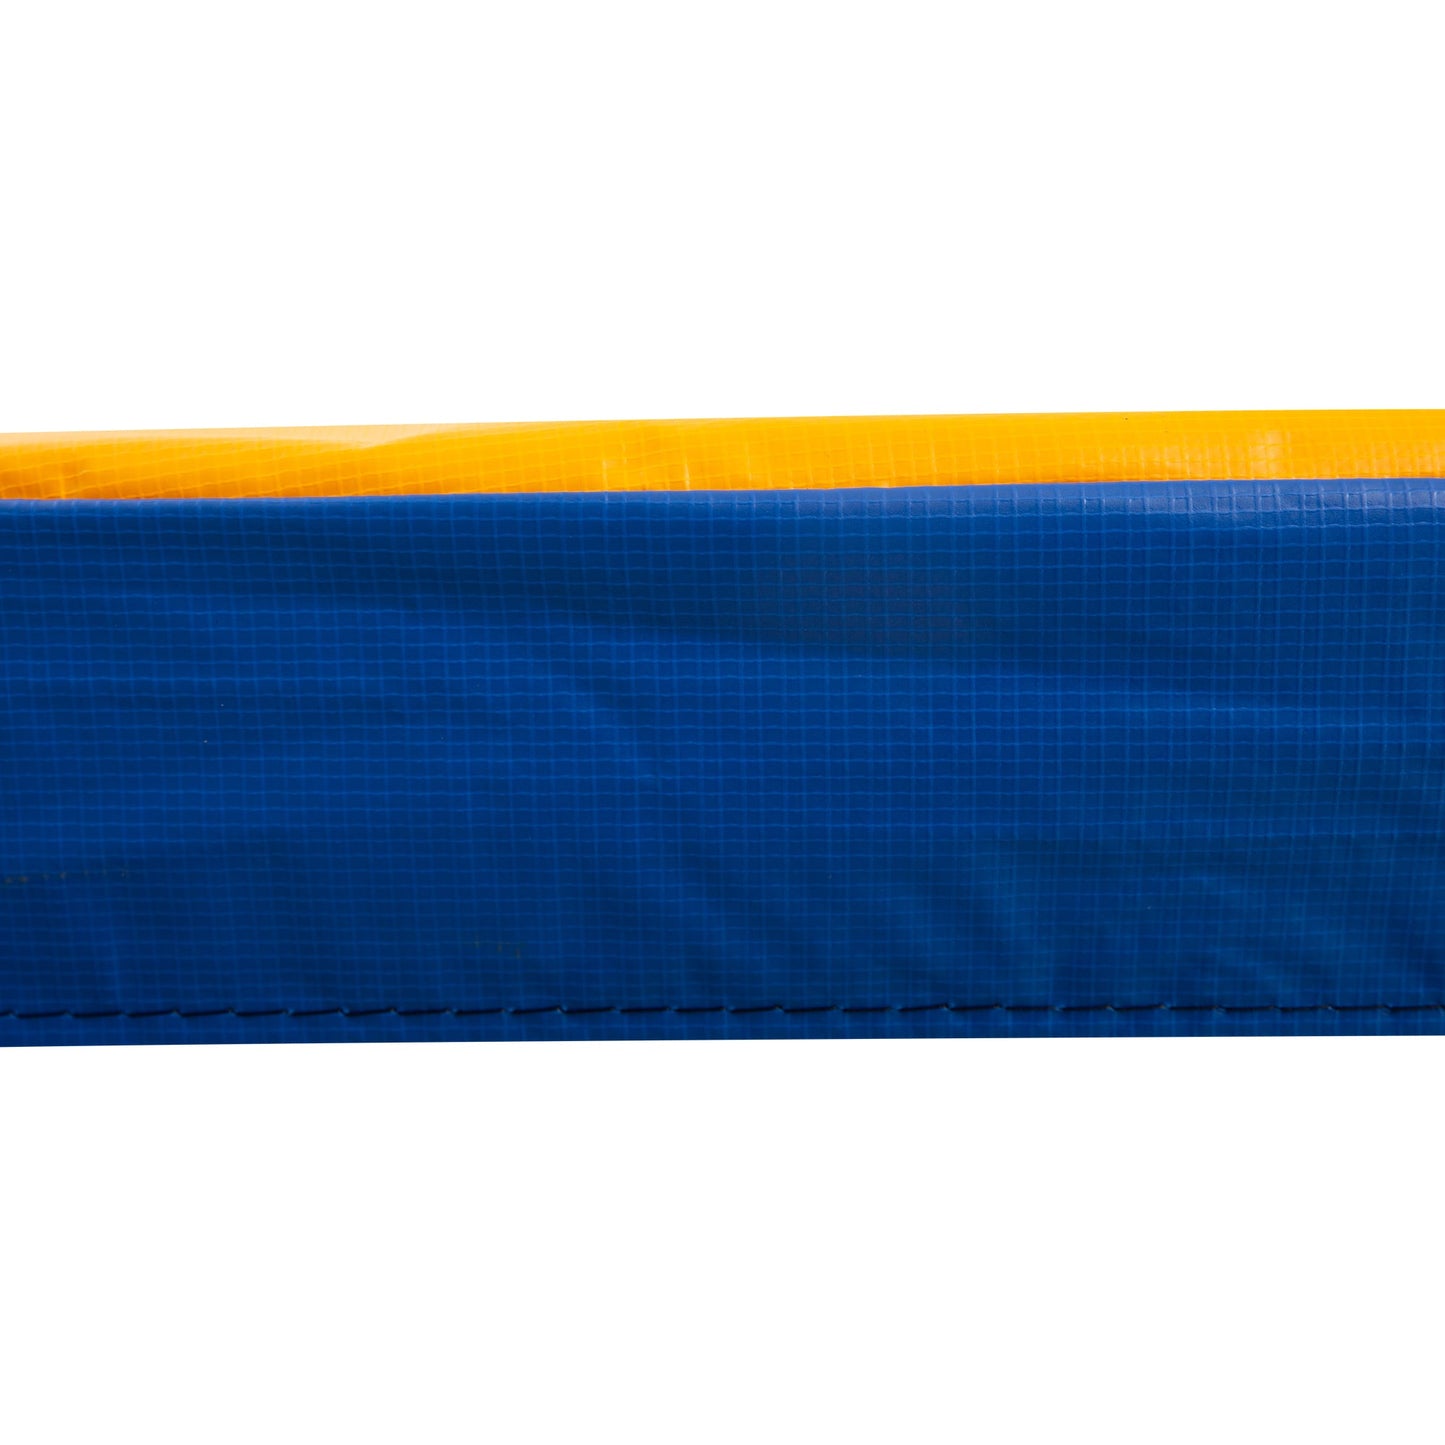 Φ10ft Trampoline Replacement Safety Pad Trampoline Pad Waterproof Spring Cover Multicoloured at Gallery Canada